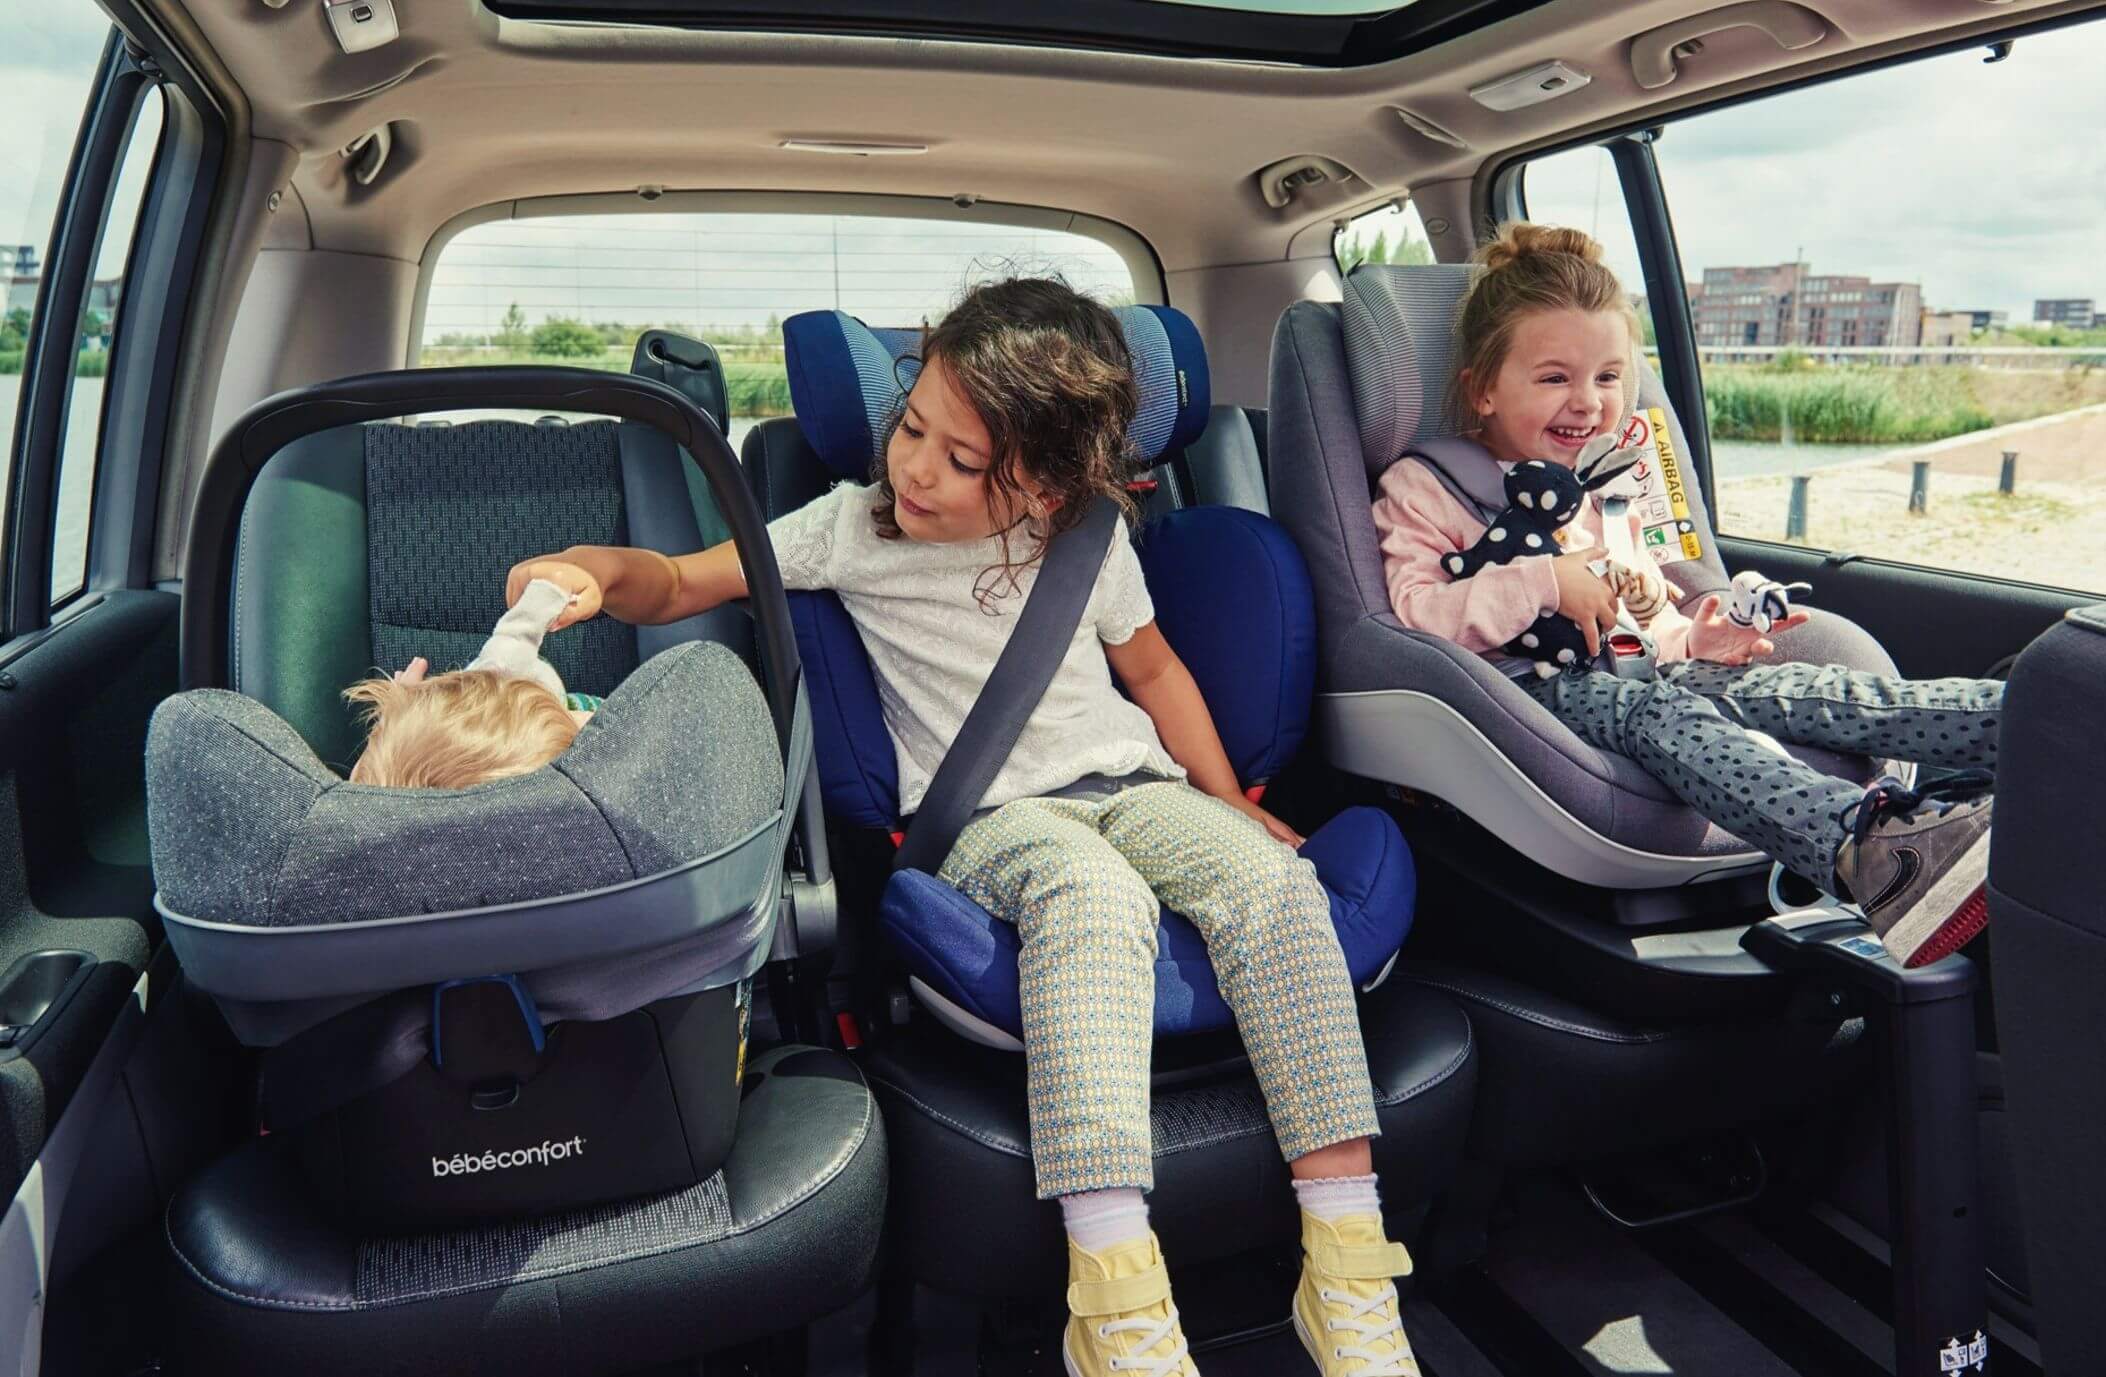 Trouvez le meilleur siège auto pour votre famille ׀ Sièges auto